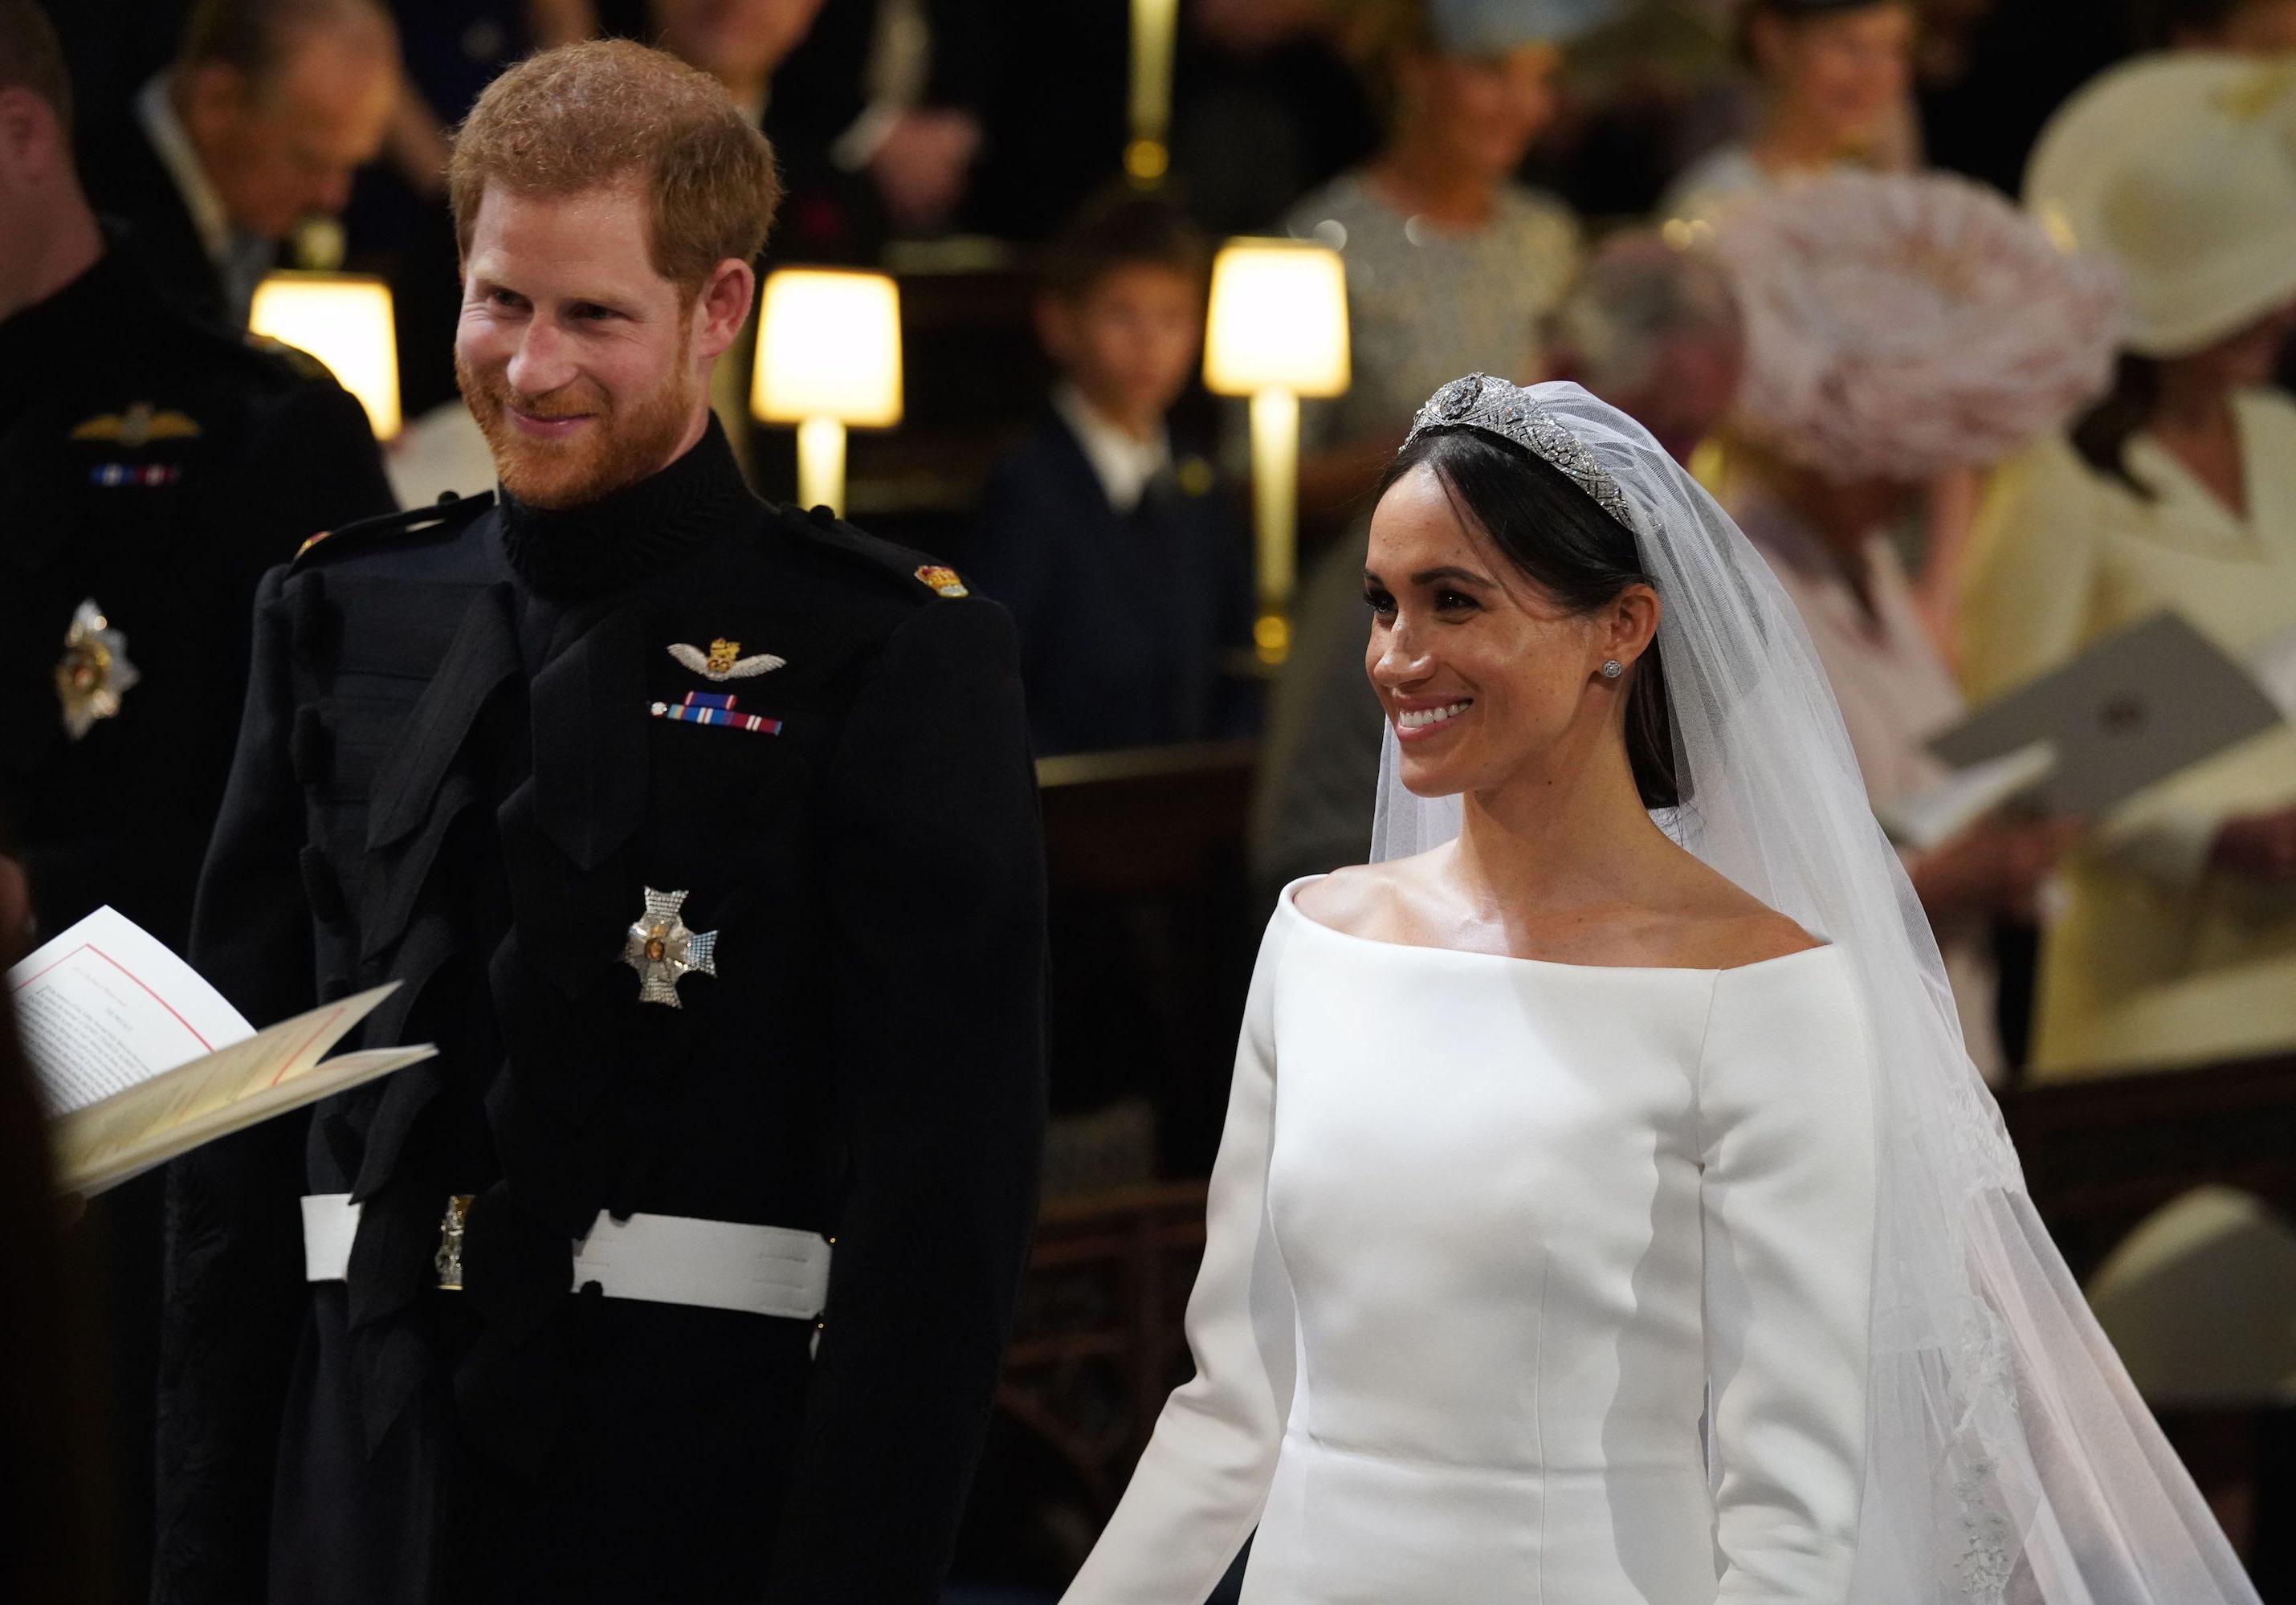 Le mariage des Sussex, le 19 mai 2028 `| Photo : Getty Images